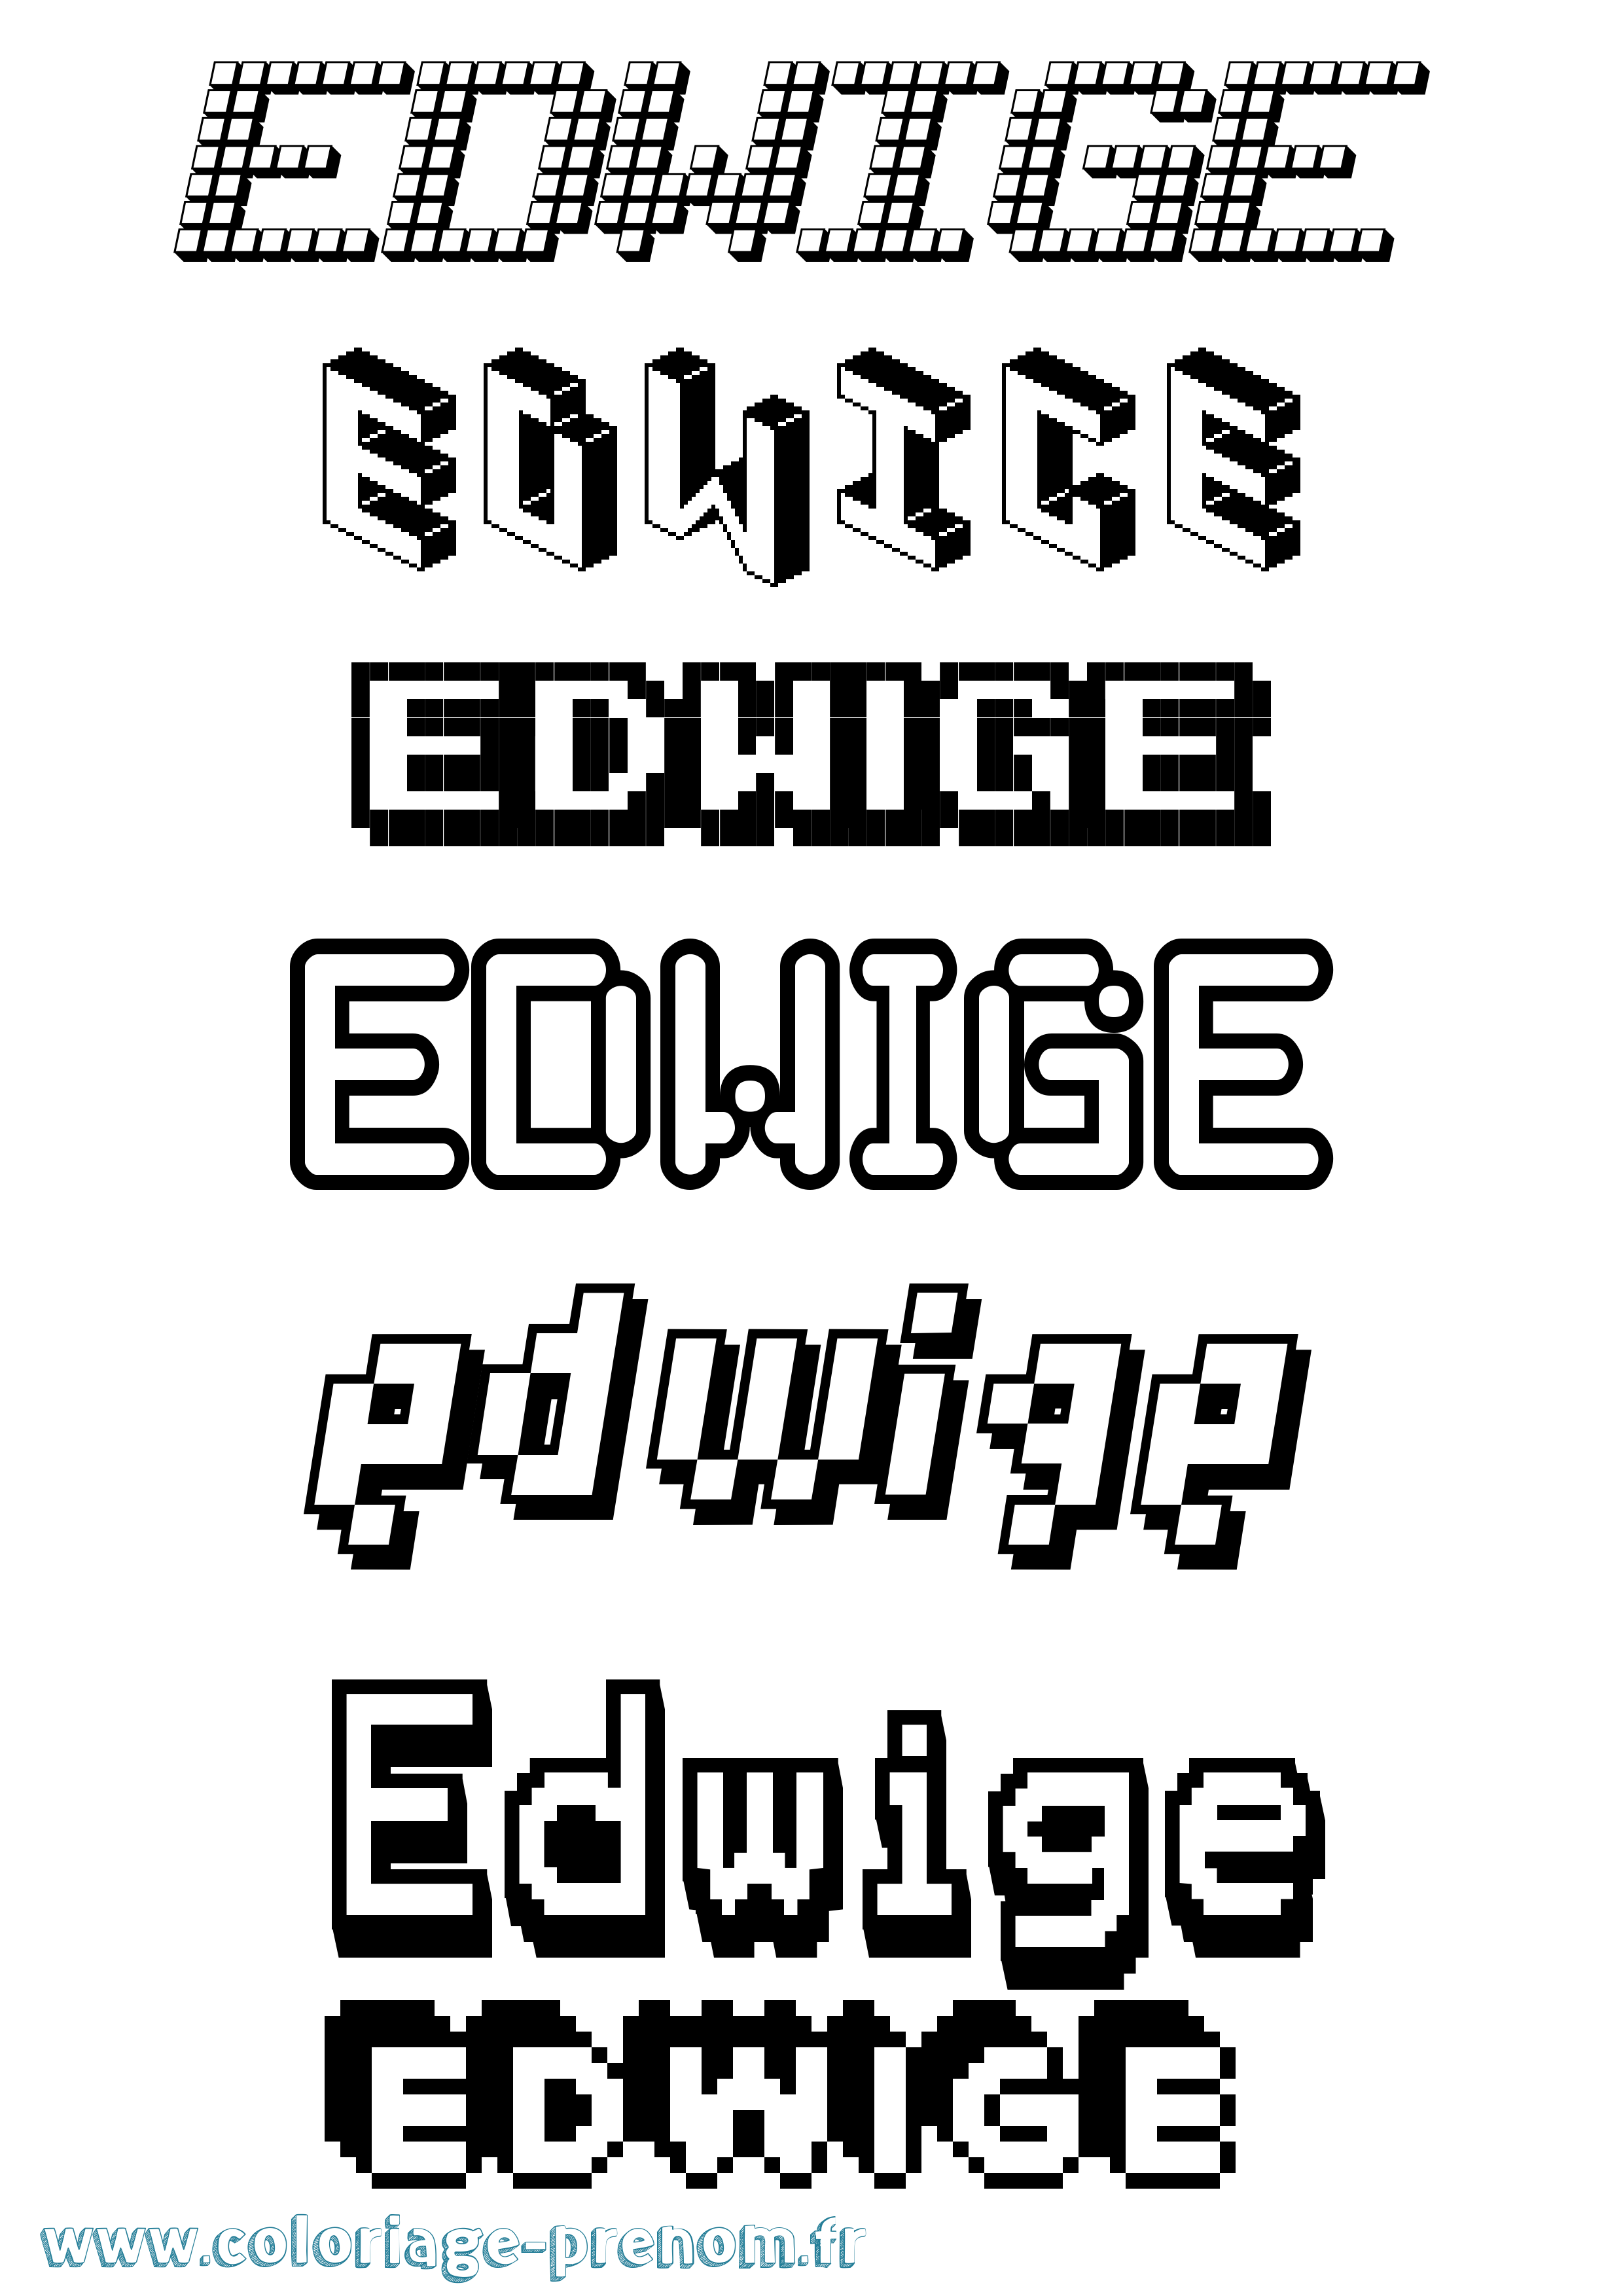 Coloriage prénom Edwige